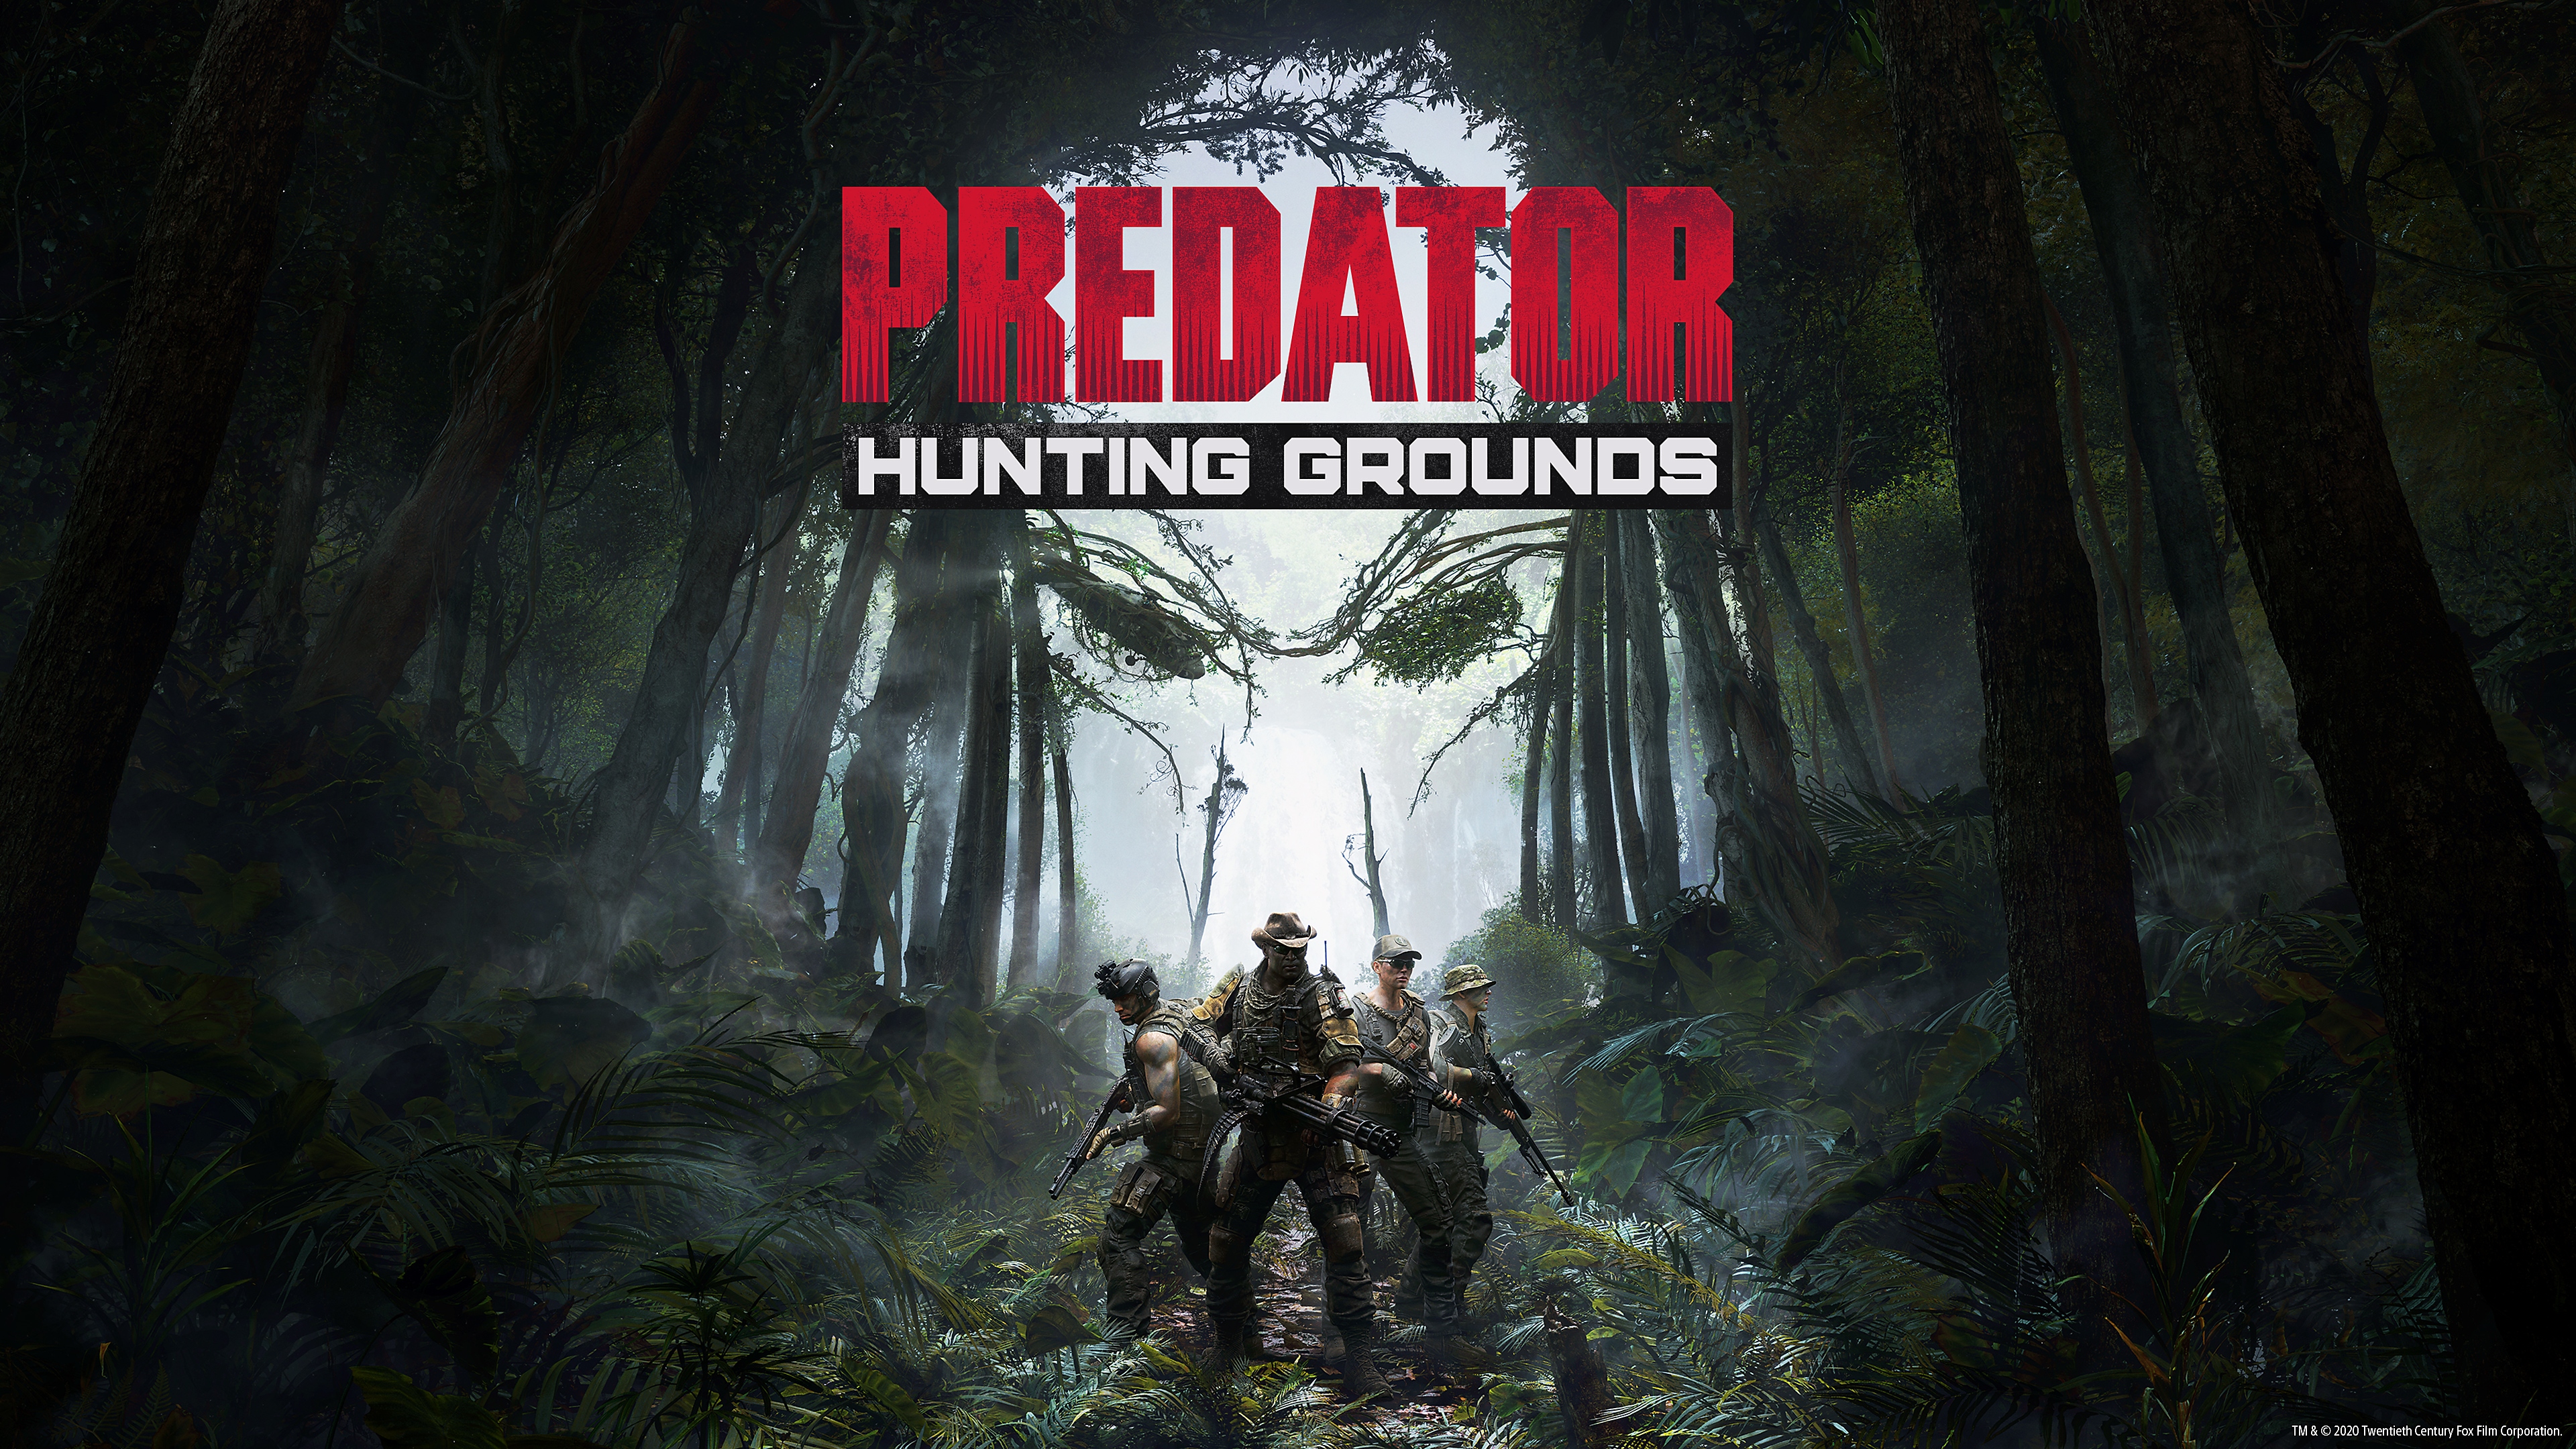 Predator: Hunting Grounds - Fireteam al centro di una radura nella foresta mentre gli alberi formano la sagoma del Predator